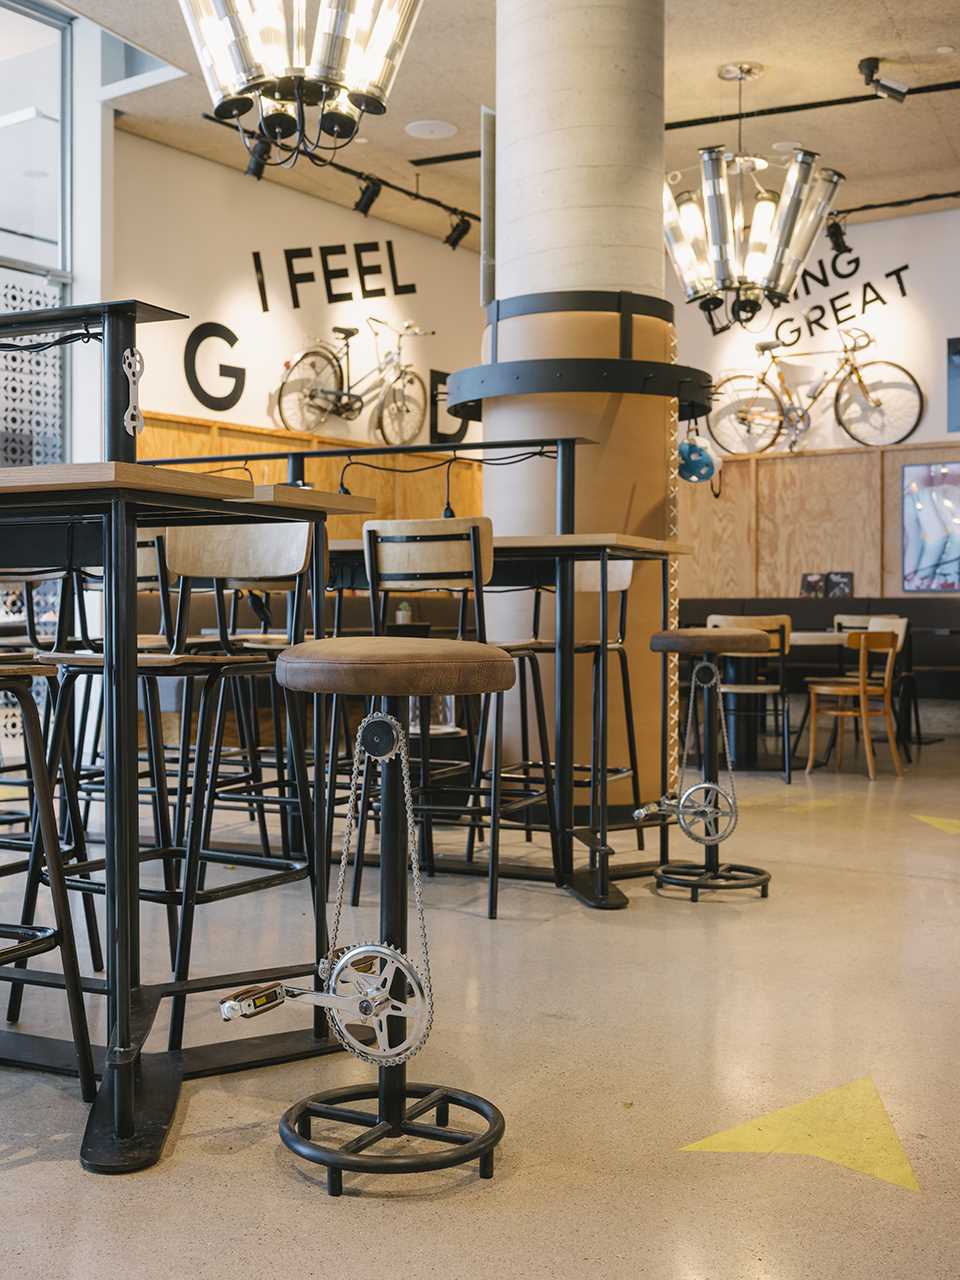 فضای داخلی کافه ای مدرن در اتریش با الهام از دوچرخه سواری.